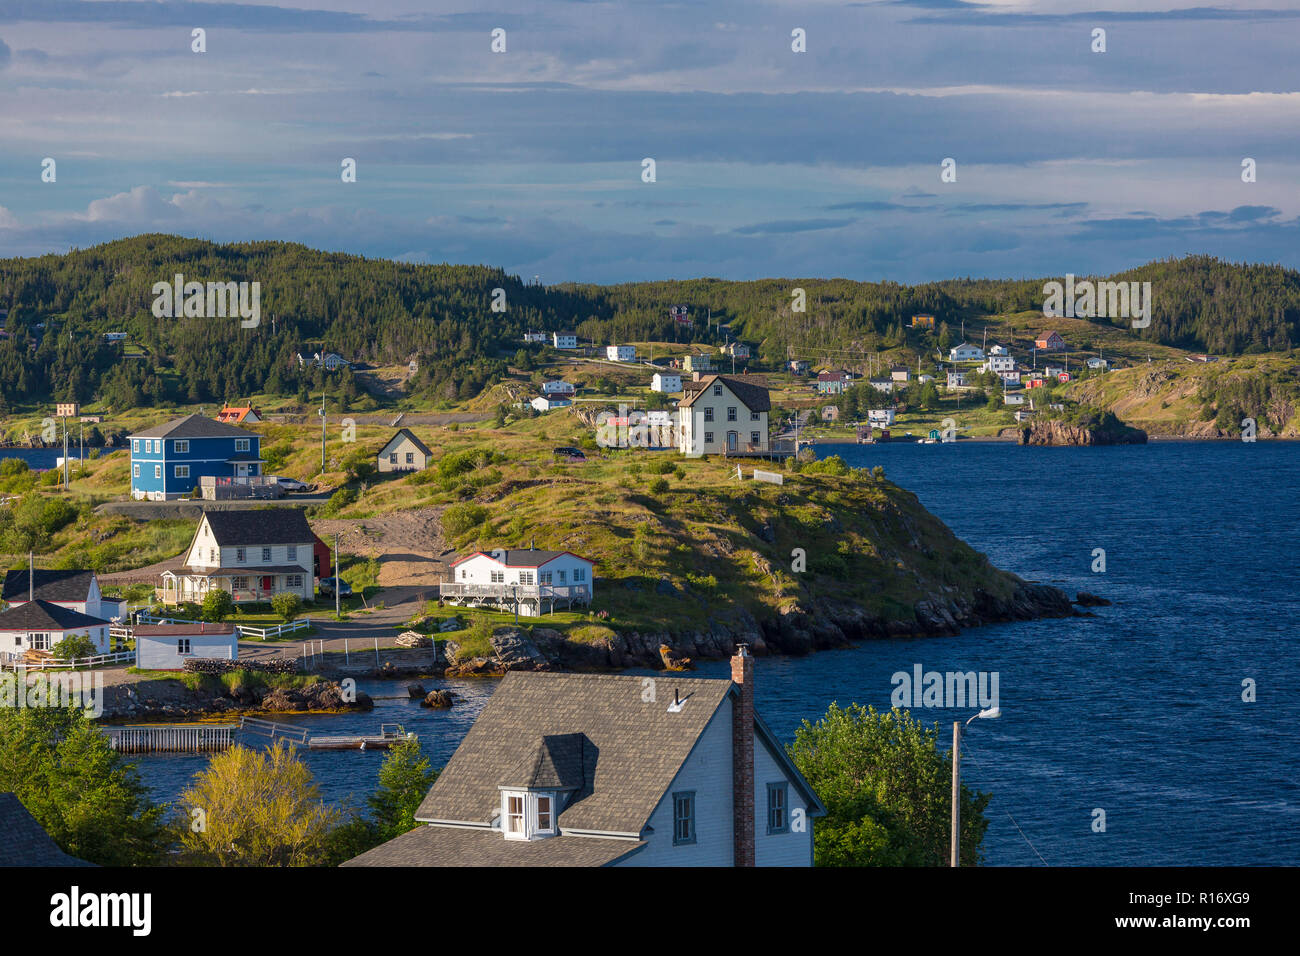 Dreifaltigkeit, Neufundland, Kanada - Häuser mit Blick auf den Hafen in der kleinen Küstenstadt Dreifaltigkeit. Stockfoto